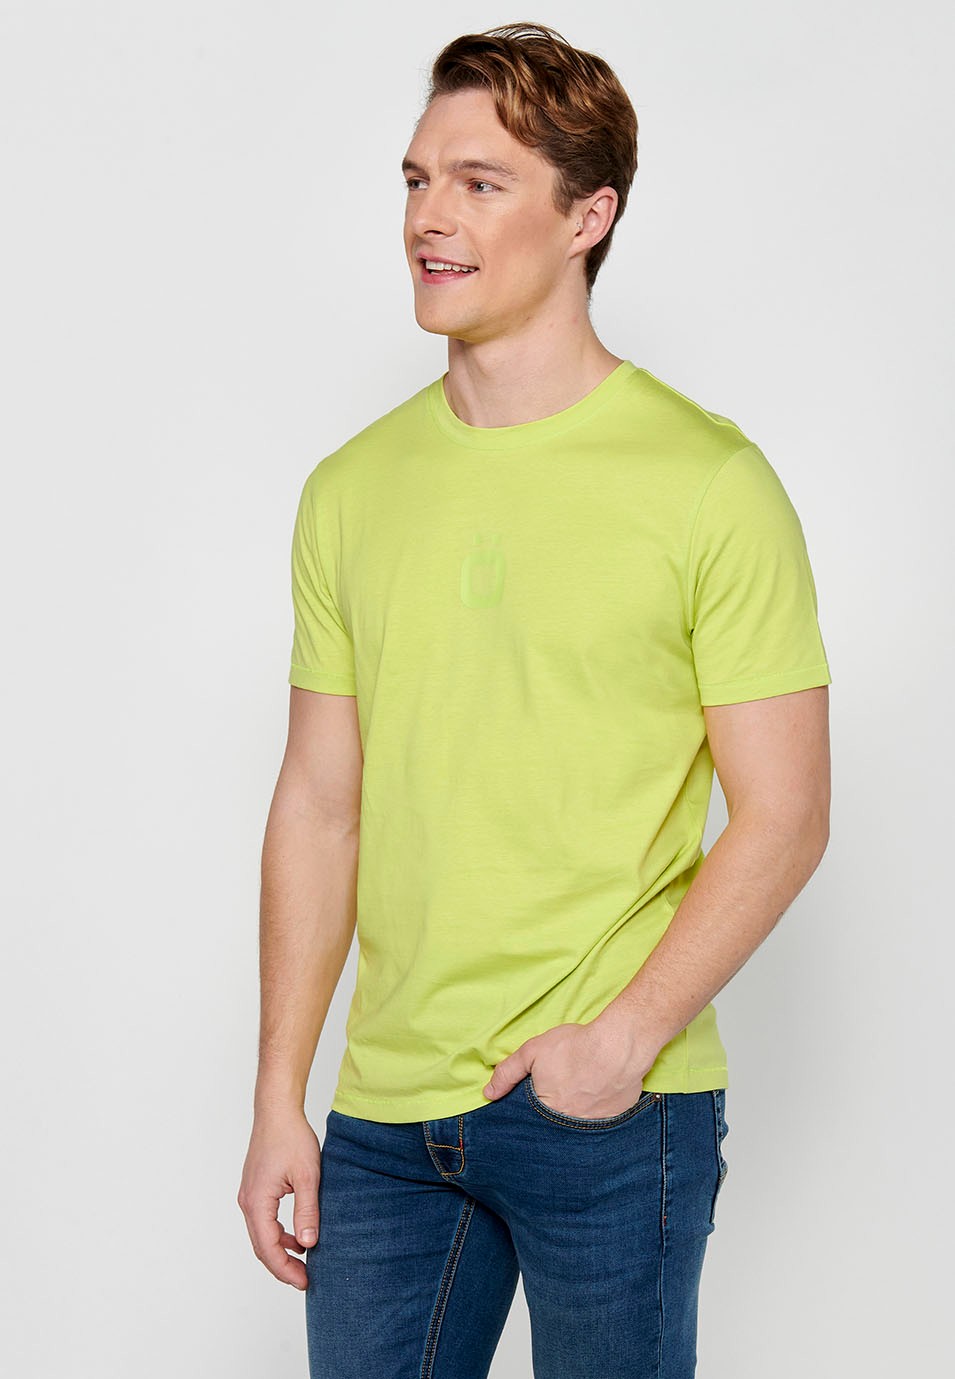 Camiseta de manga corta cuello redondo logo frontal color lima para hombre